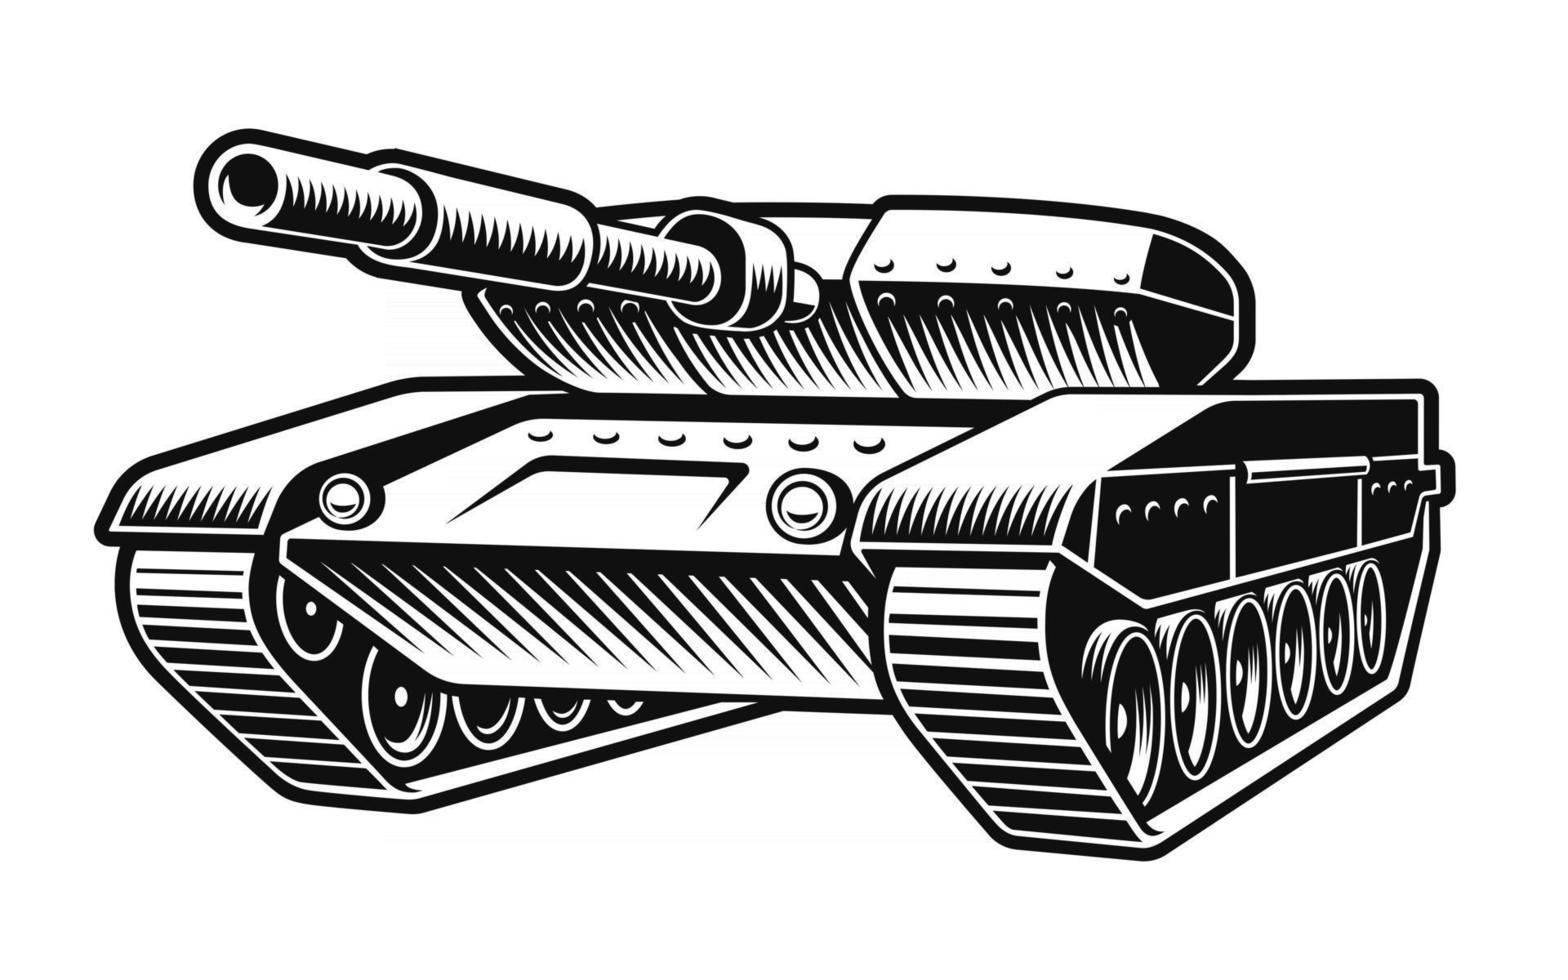 Schwarz-Weiß-Vektor-Illustration eines Panzers vektor